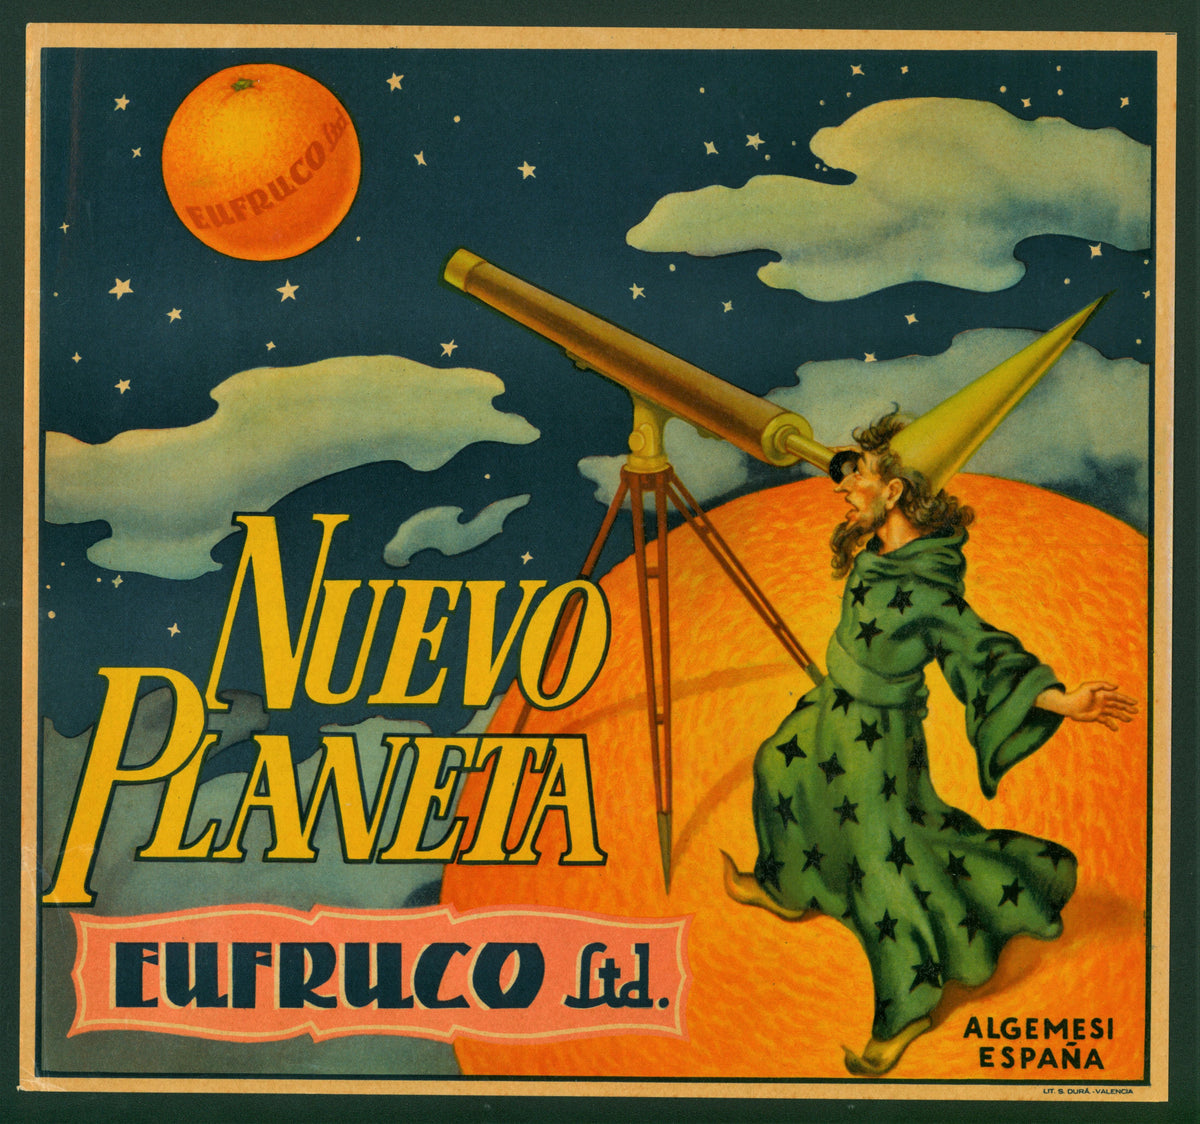 Nuevo Planeta- Spanish Crate Label - Authentic Vintage Antique Print